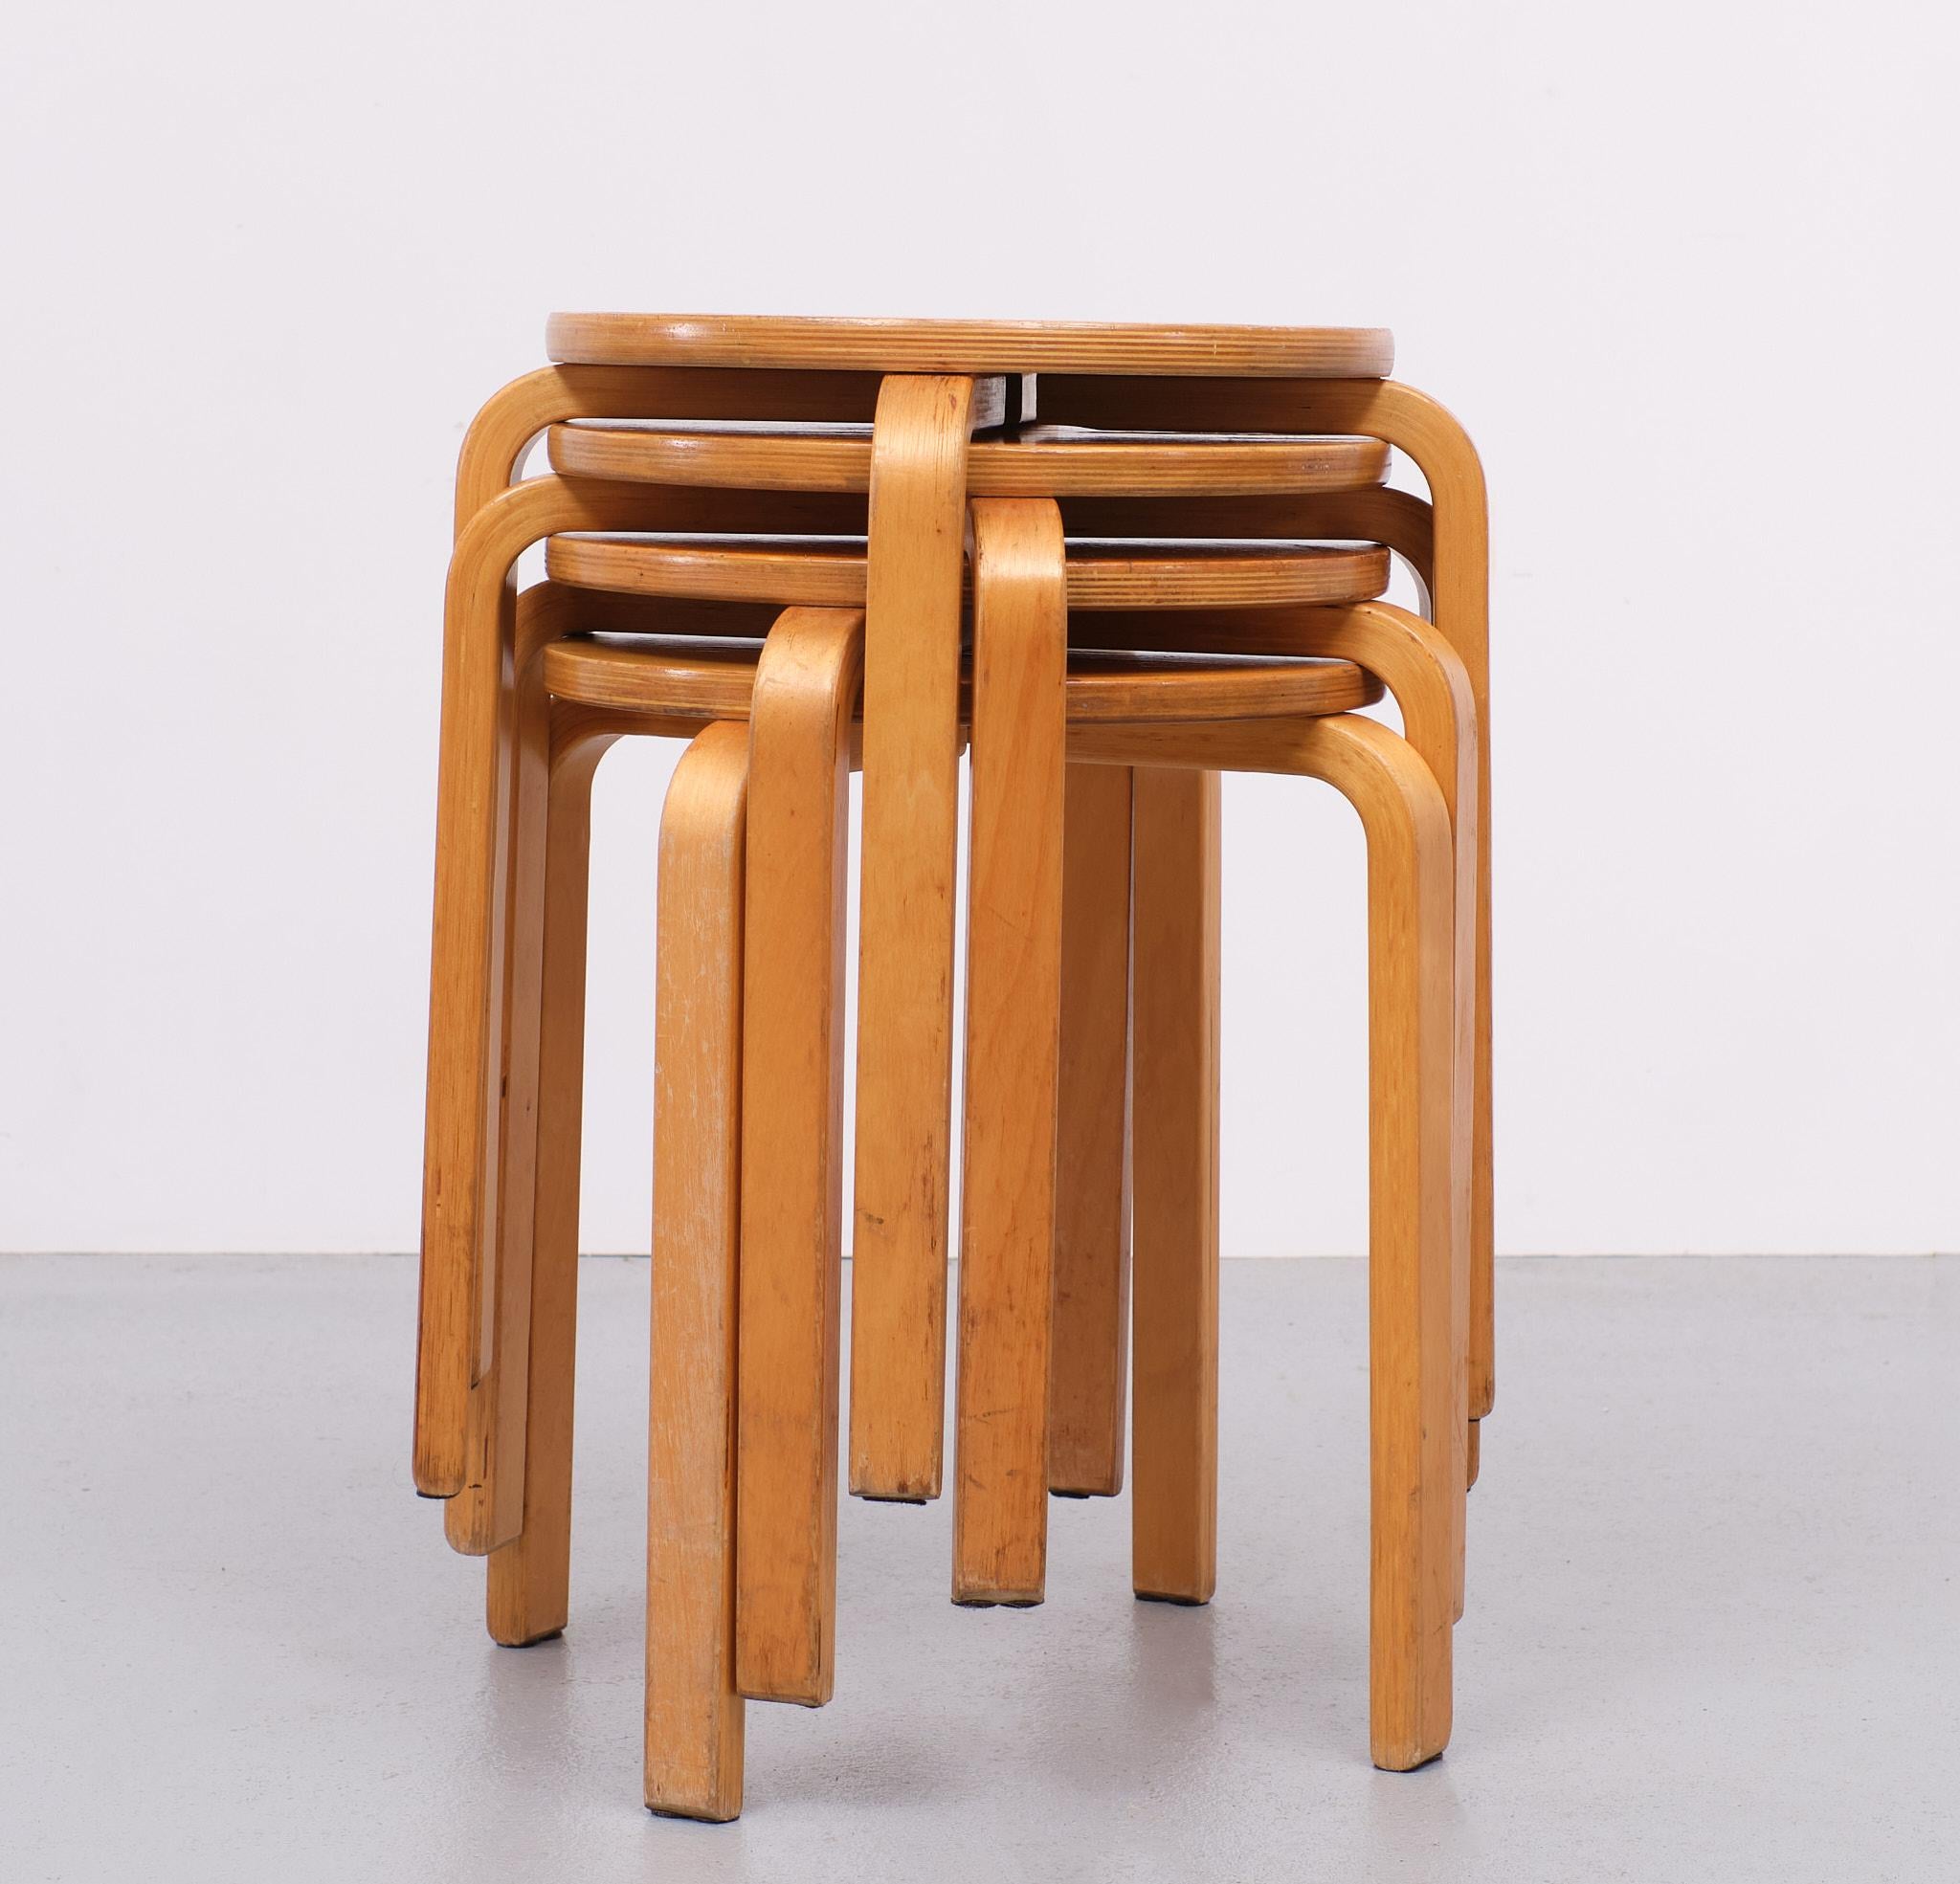 Très bel ensemble de tabourets en bois Frosta Bend. 4 pièces originales dessinées par Alvar Aalto fabriquées par Ikea. Il faut aimer cette couleur d'affûtage parfaite. Possibilité d'empiler. 
Si élégants lorsqu'ils sont empilés dans un coin de la